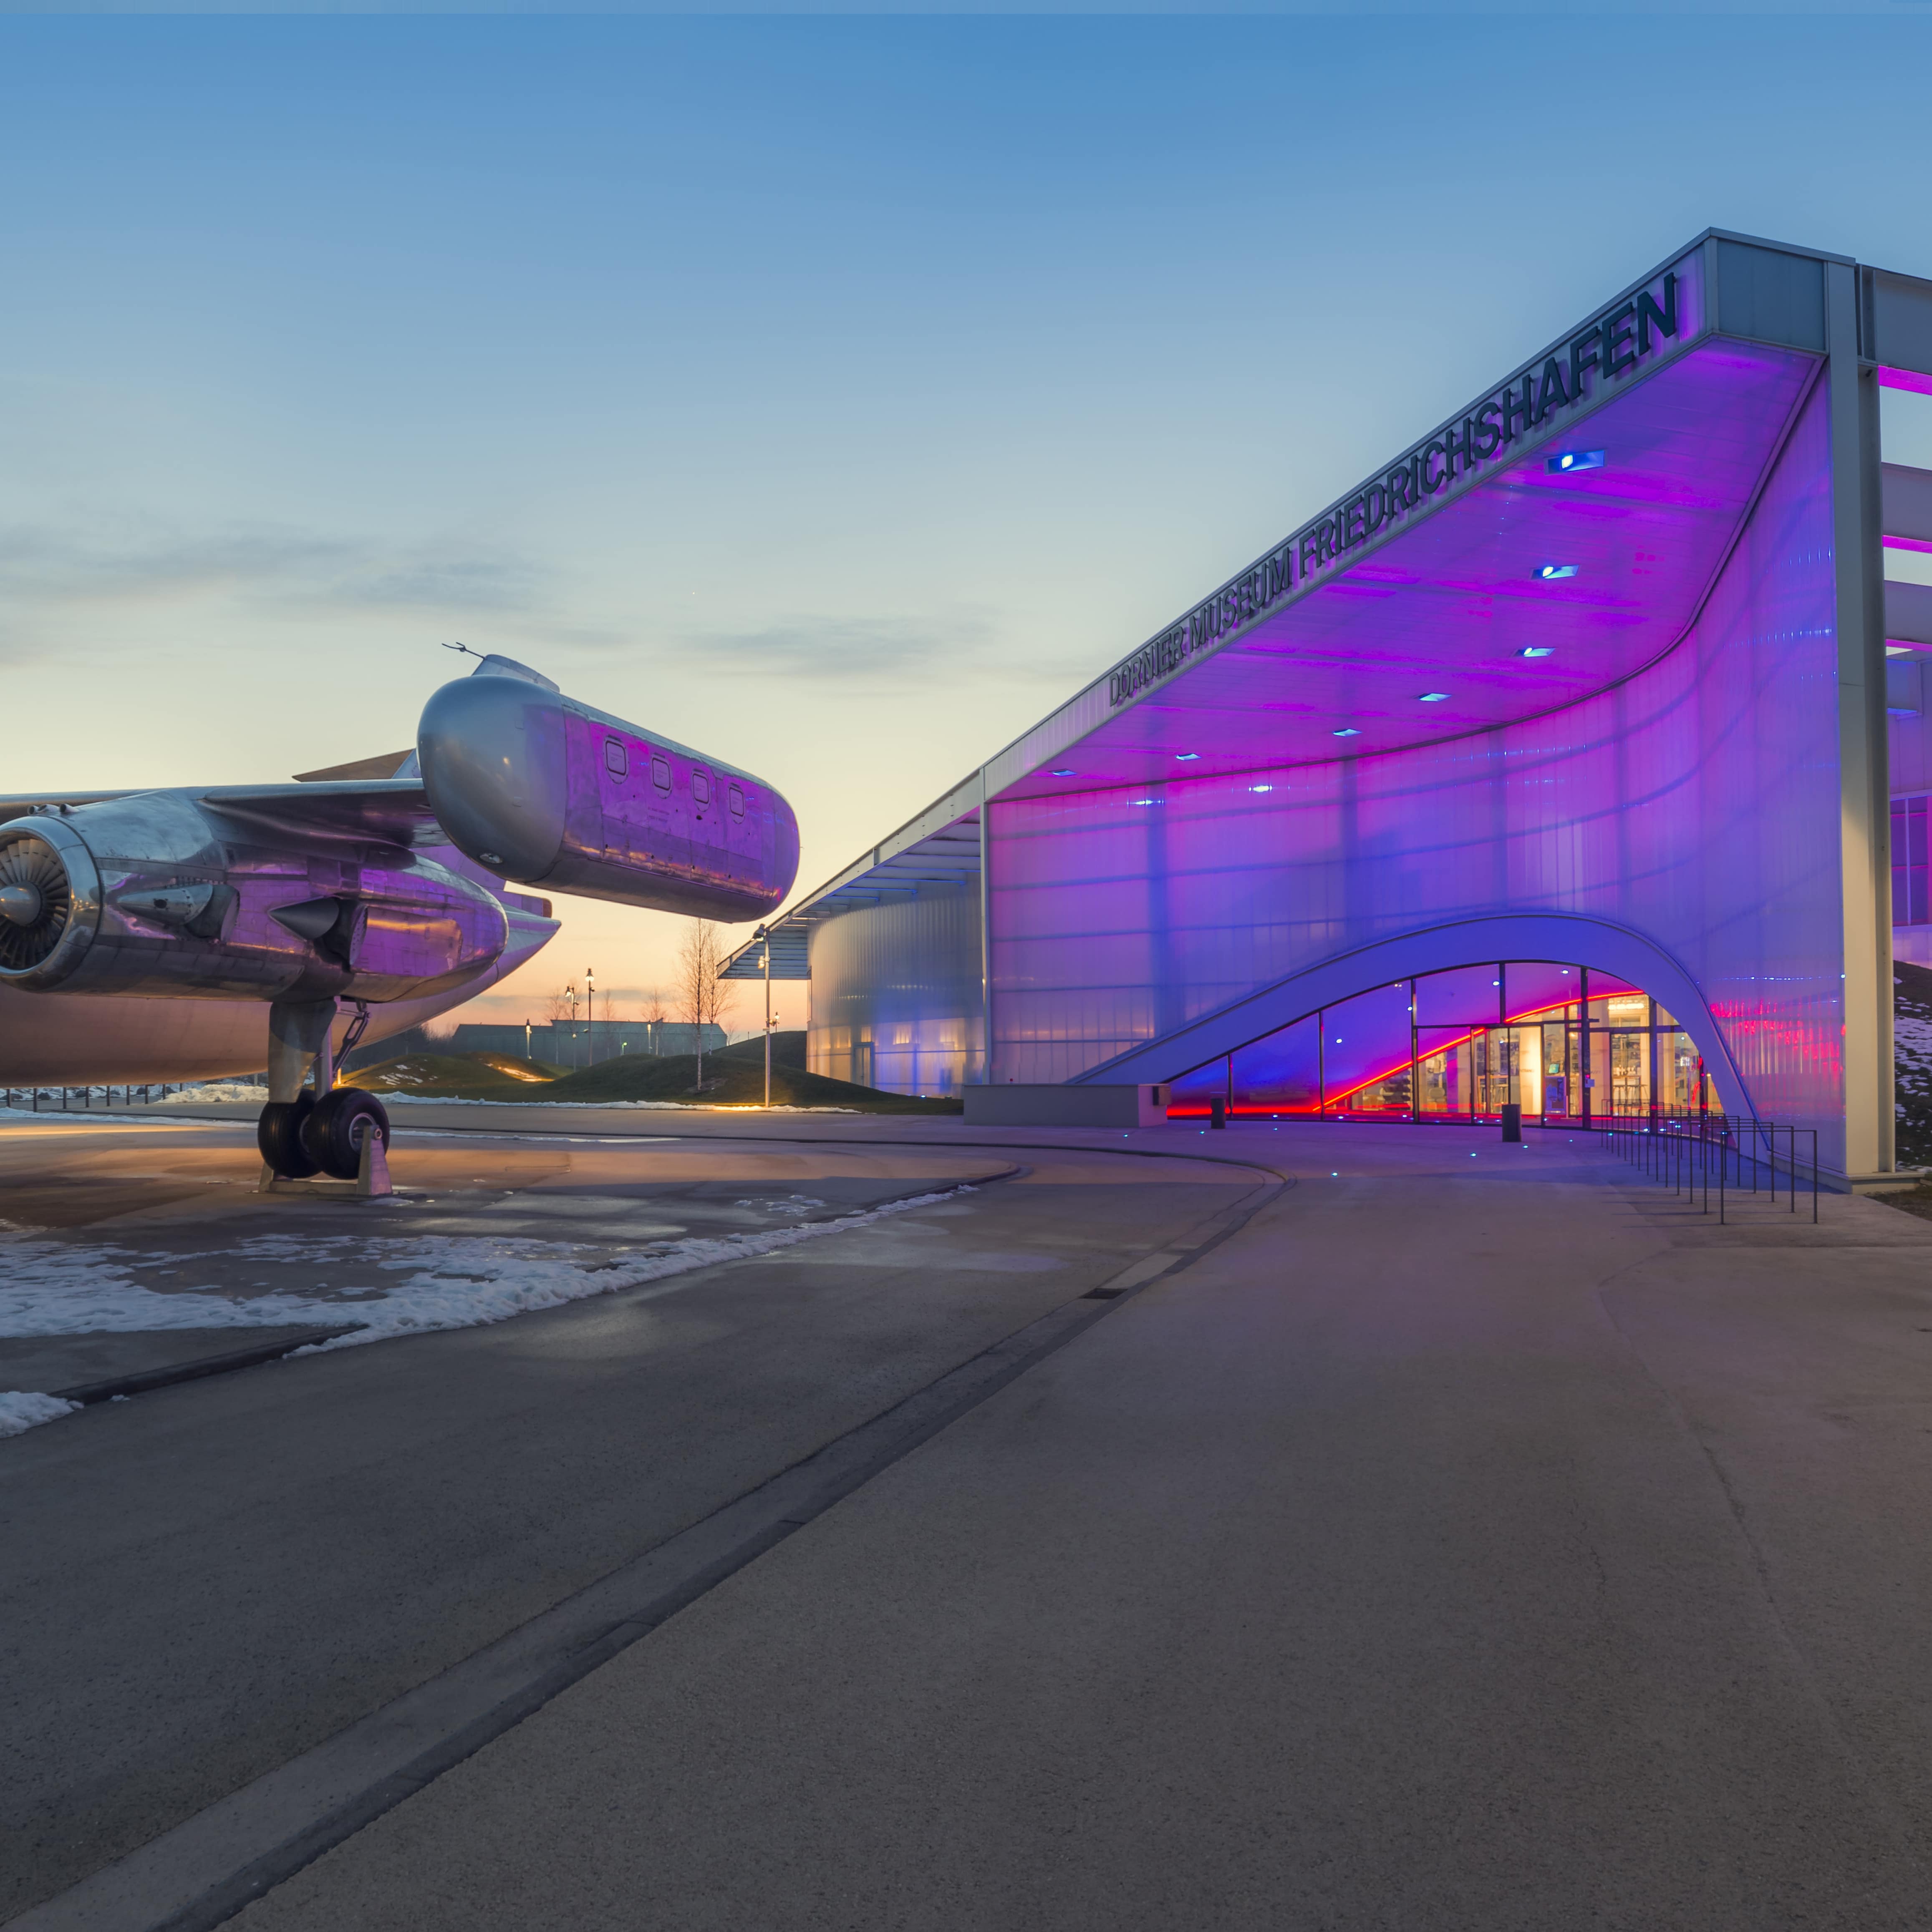 Blick aufs Dornier Museum bei Sonnenuntergang im Winter. Links steht ein Flugzeug, das Gebäude daneben ist lila erleuchtet.